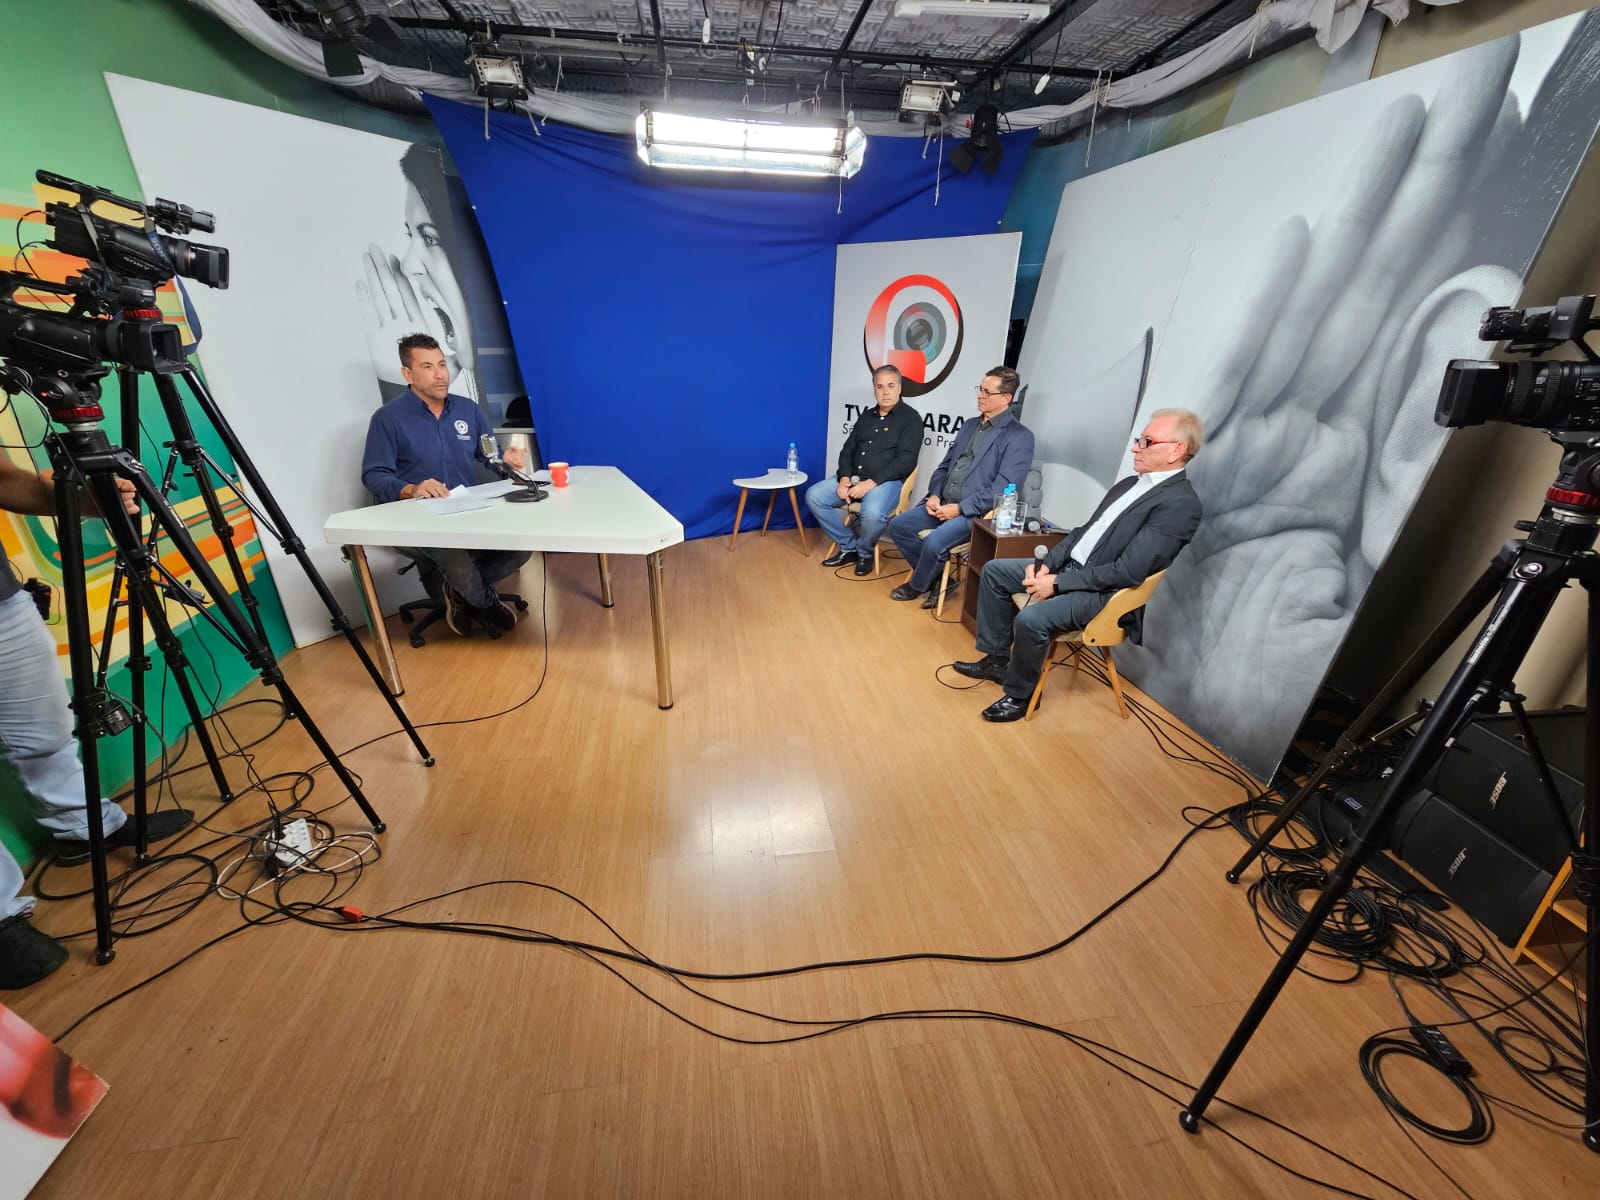 Em um estúdio de televisão, o apresentador está sentado à mesa, olhando para a câmera, com três homens, que serão entrevistados, sentados à sua frente.